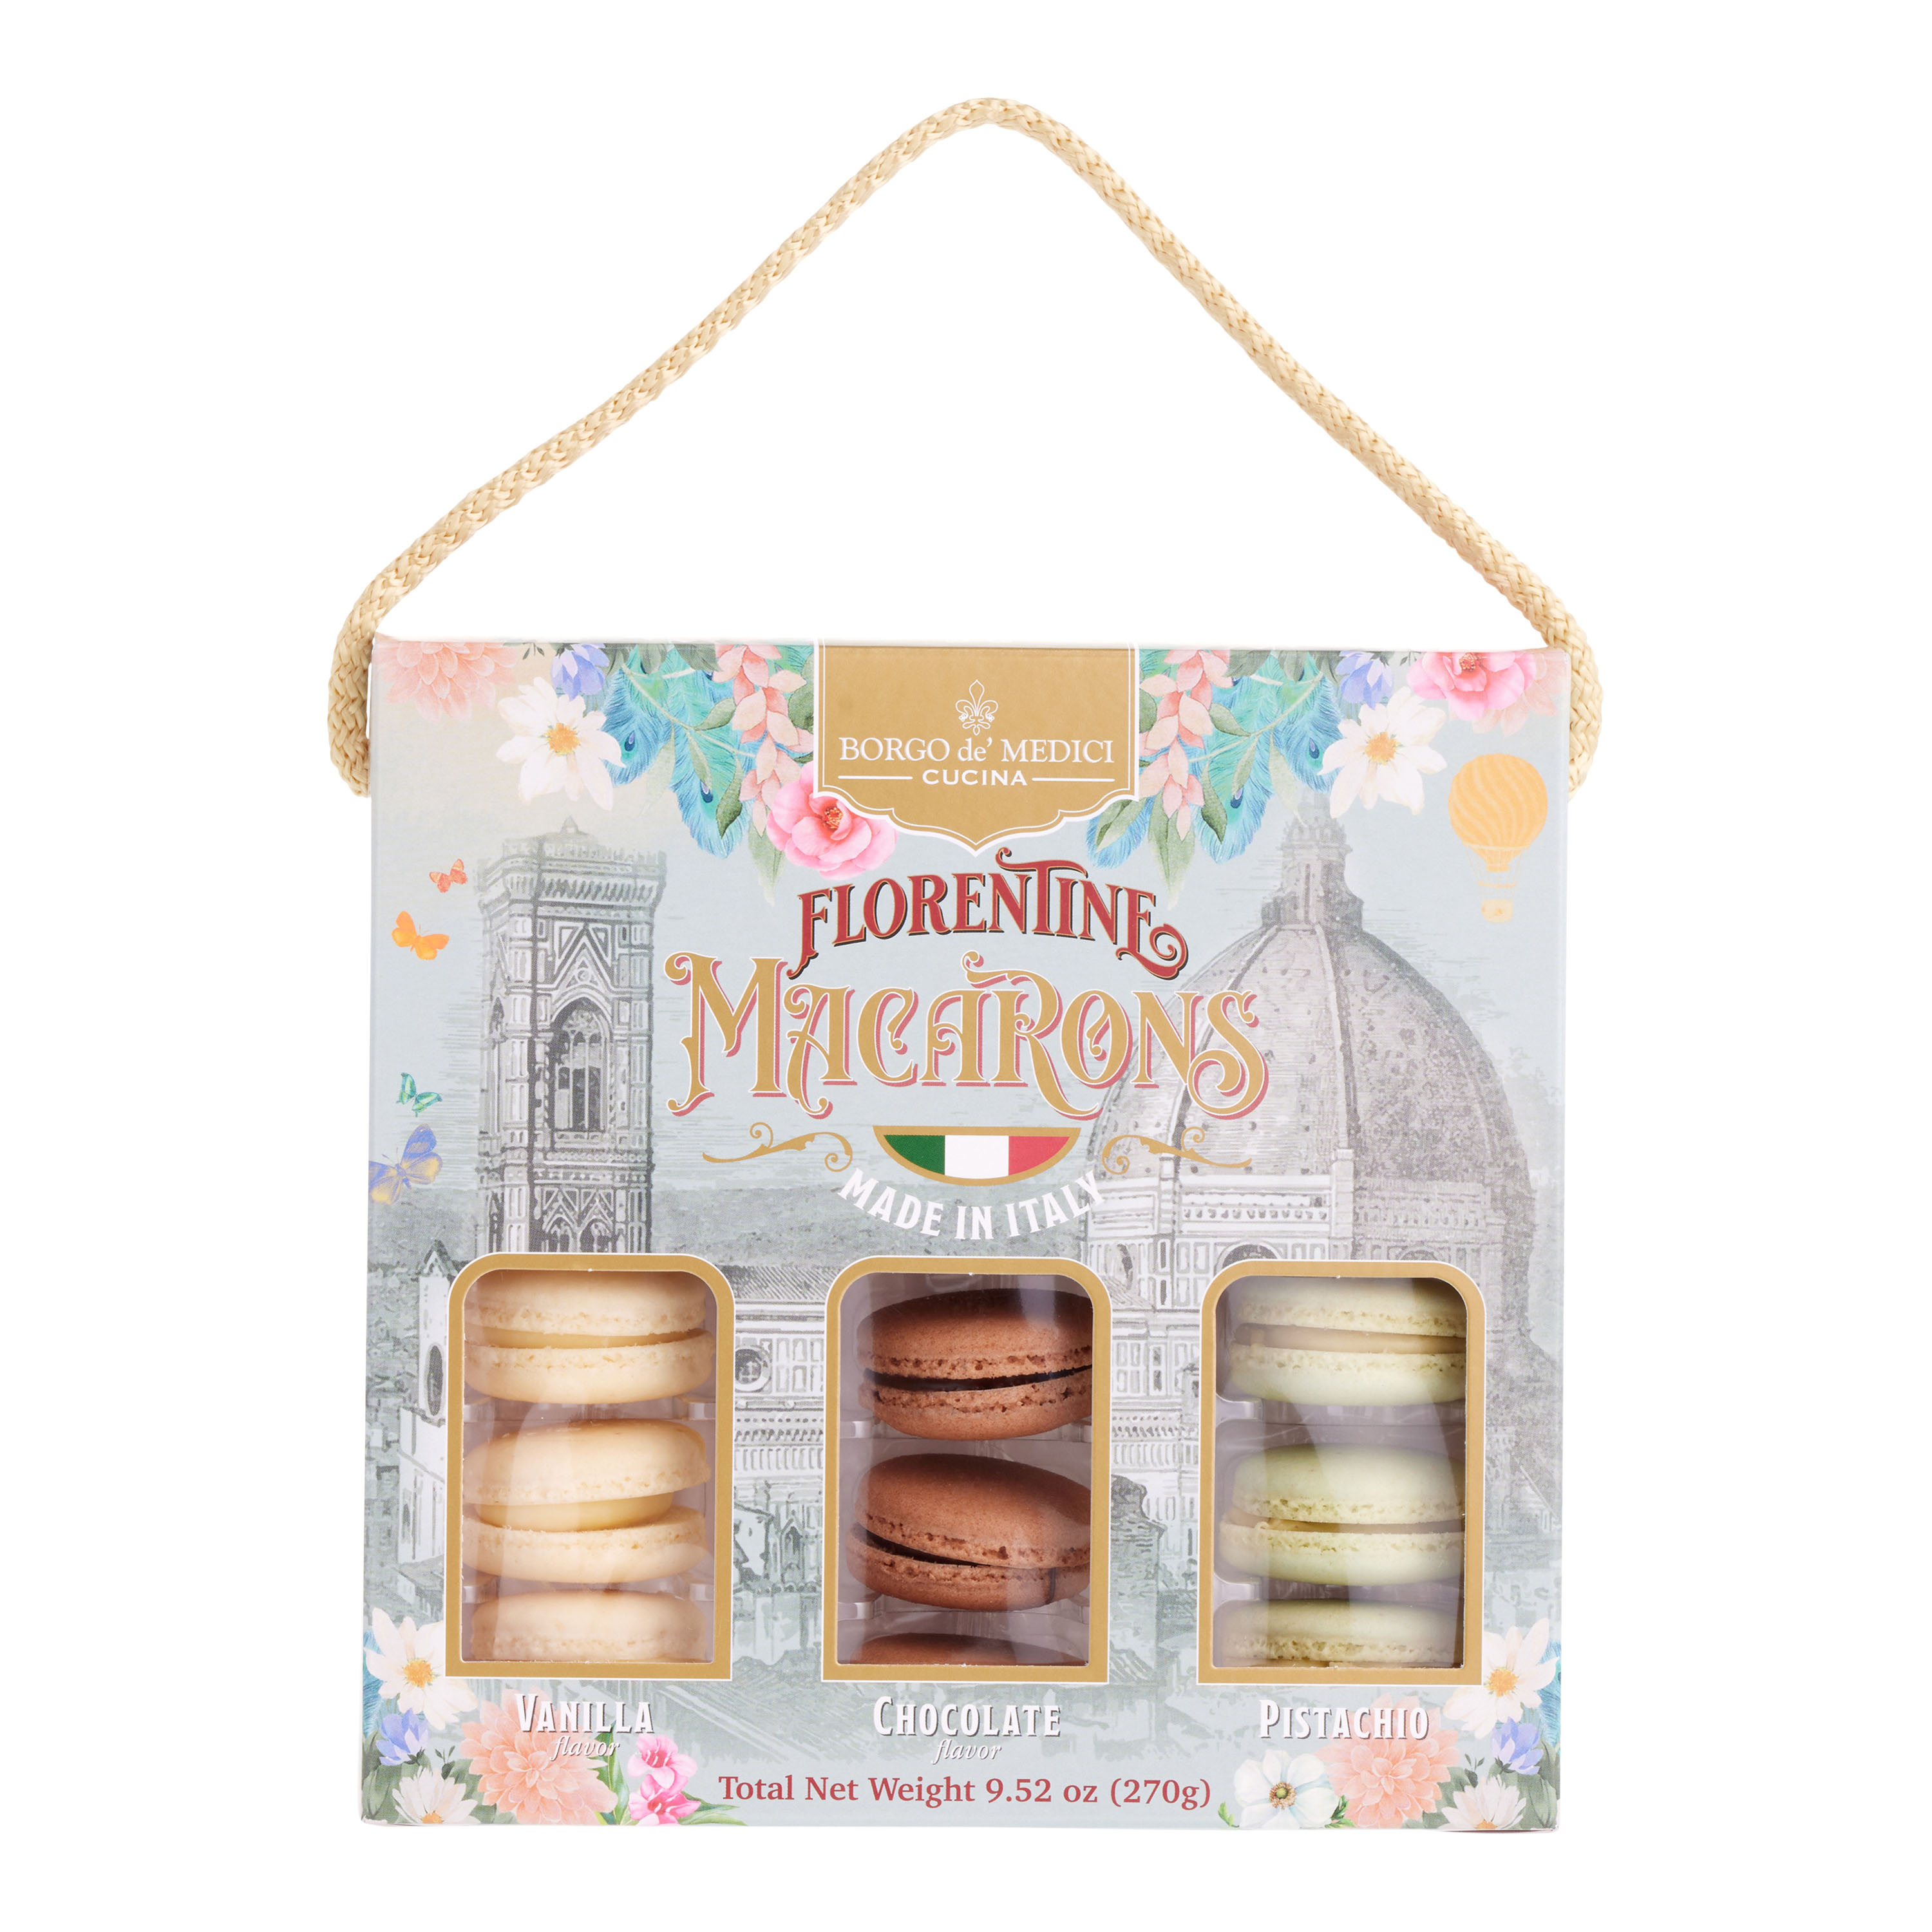 Borgo de' Medici Assorted Florentine Macarons Box 18 Count - World Market